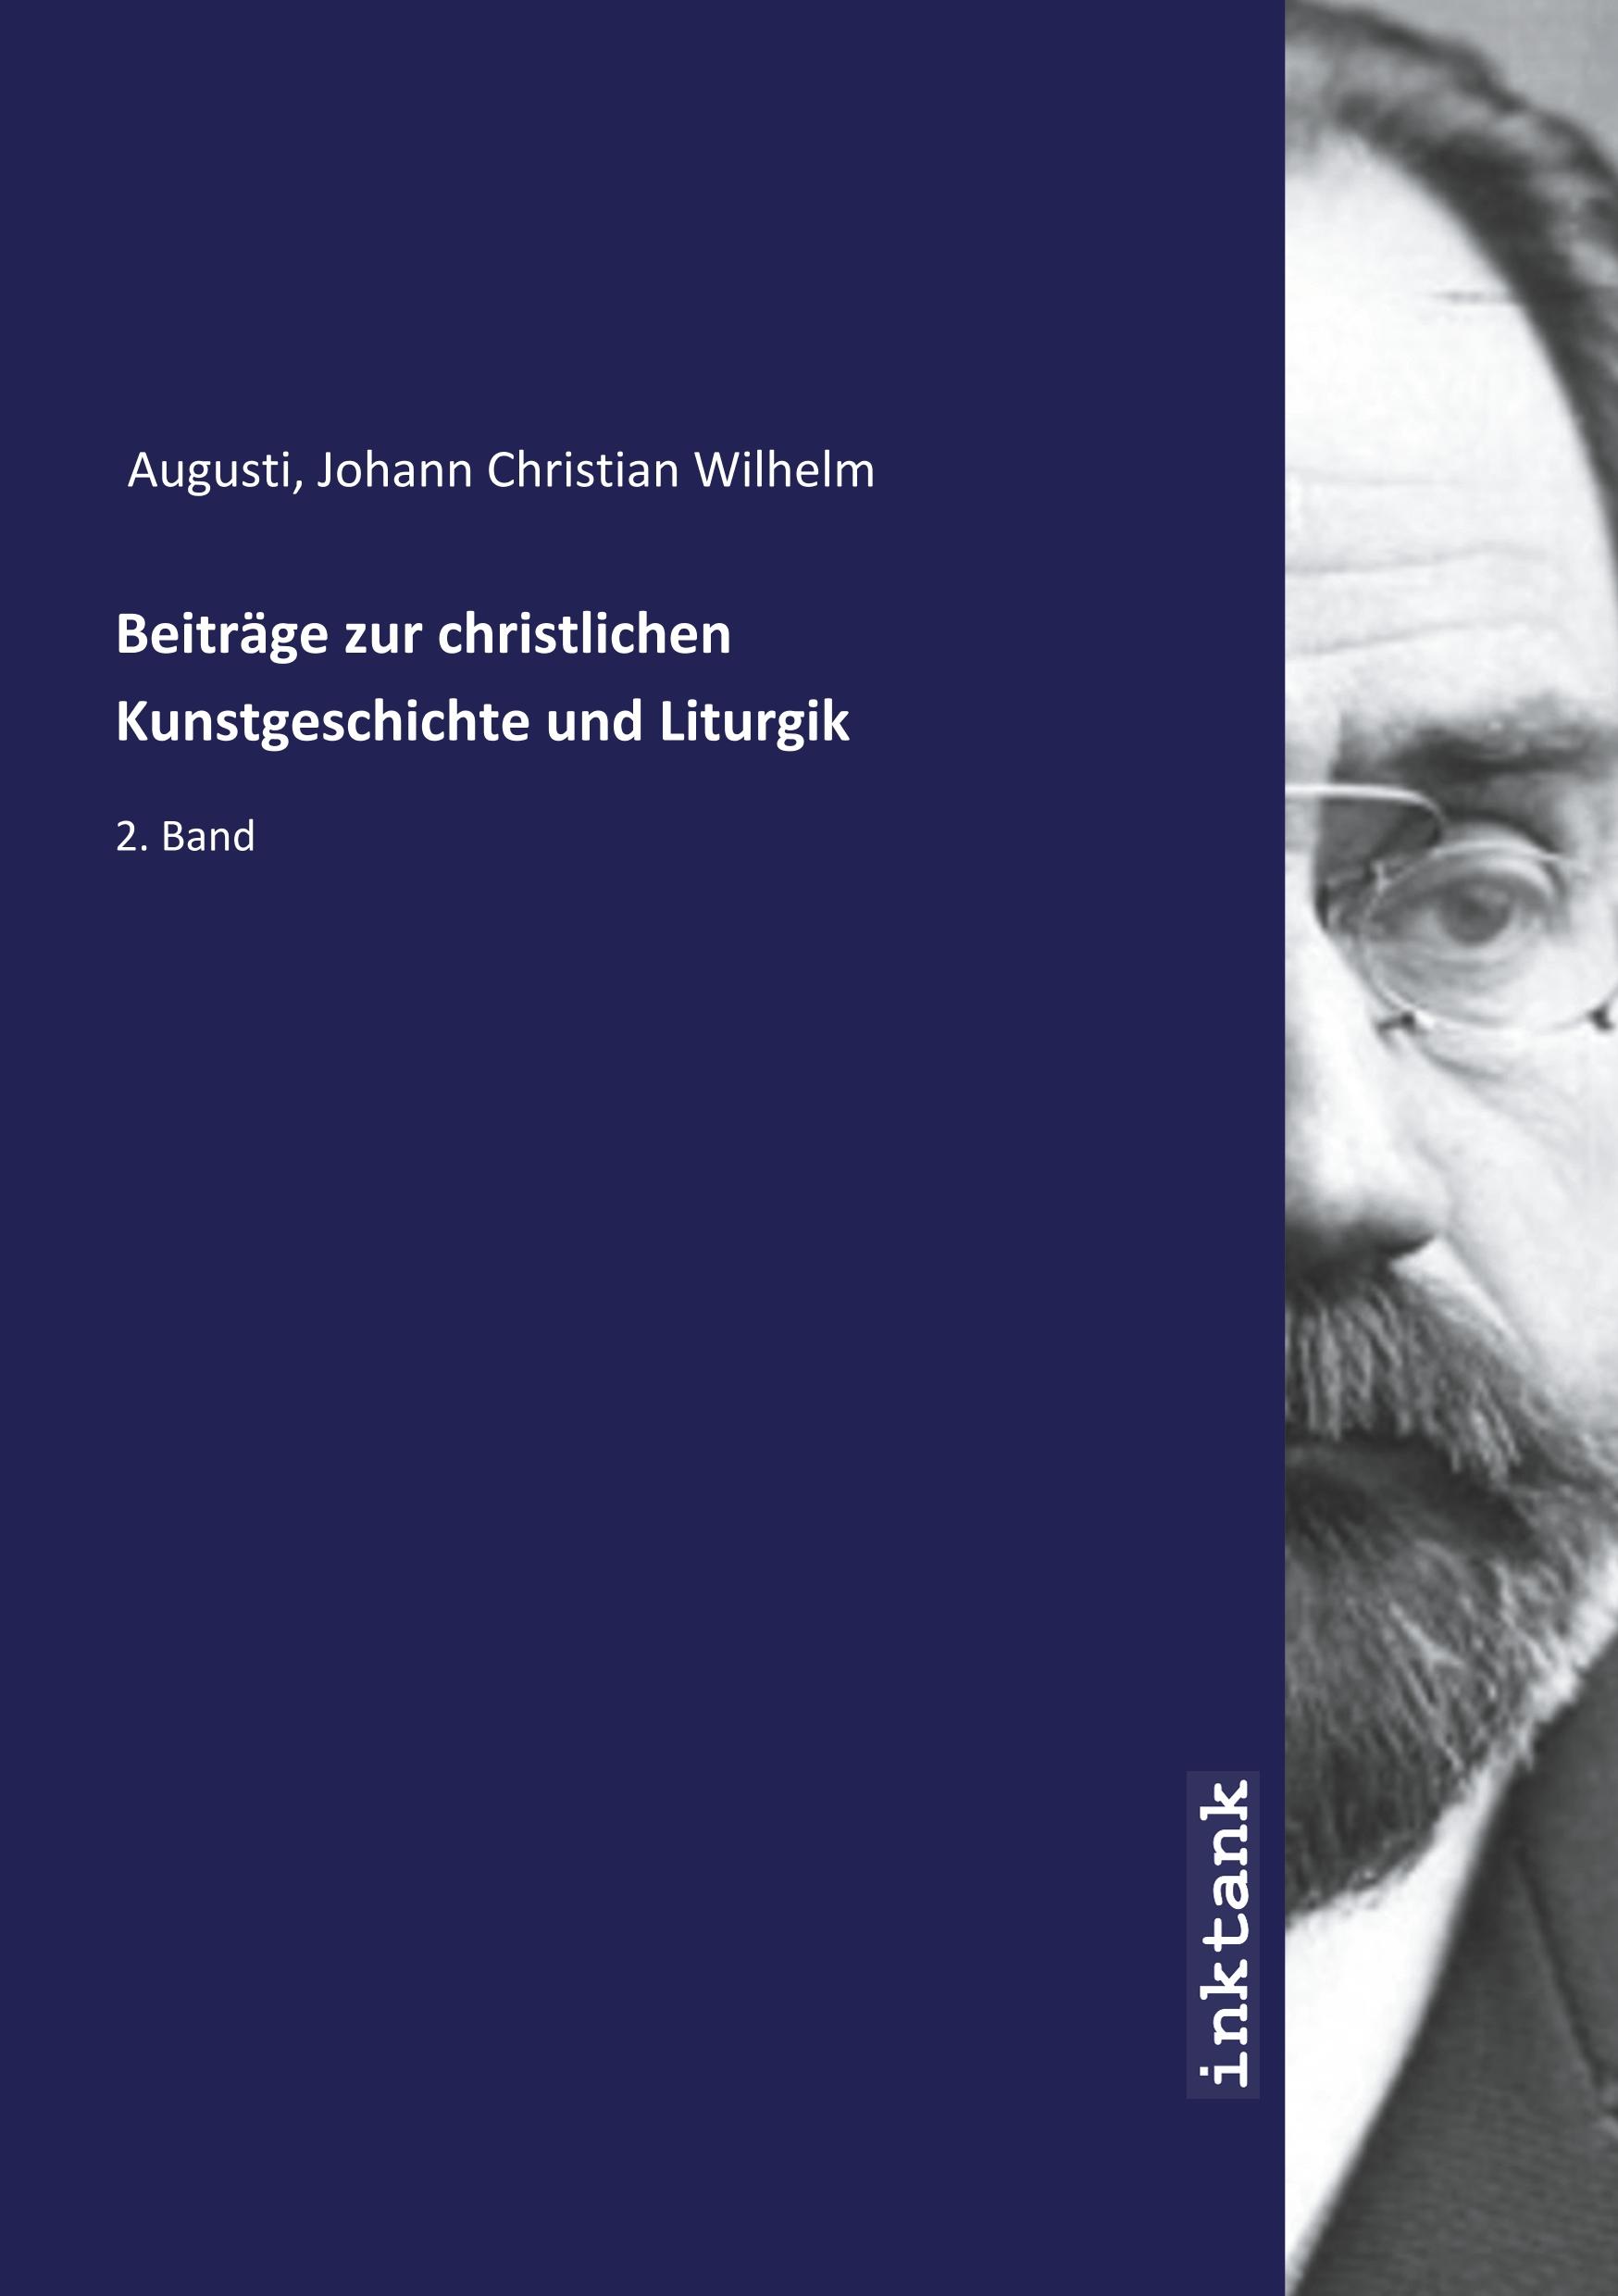 Beitraege zur christlichen Kunstgeschichte und Liturgik - Augusti, Johann Christian Wilhelm